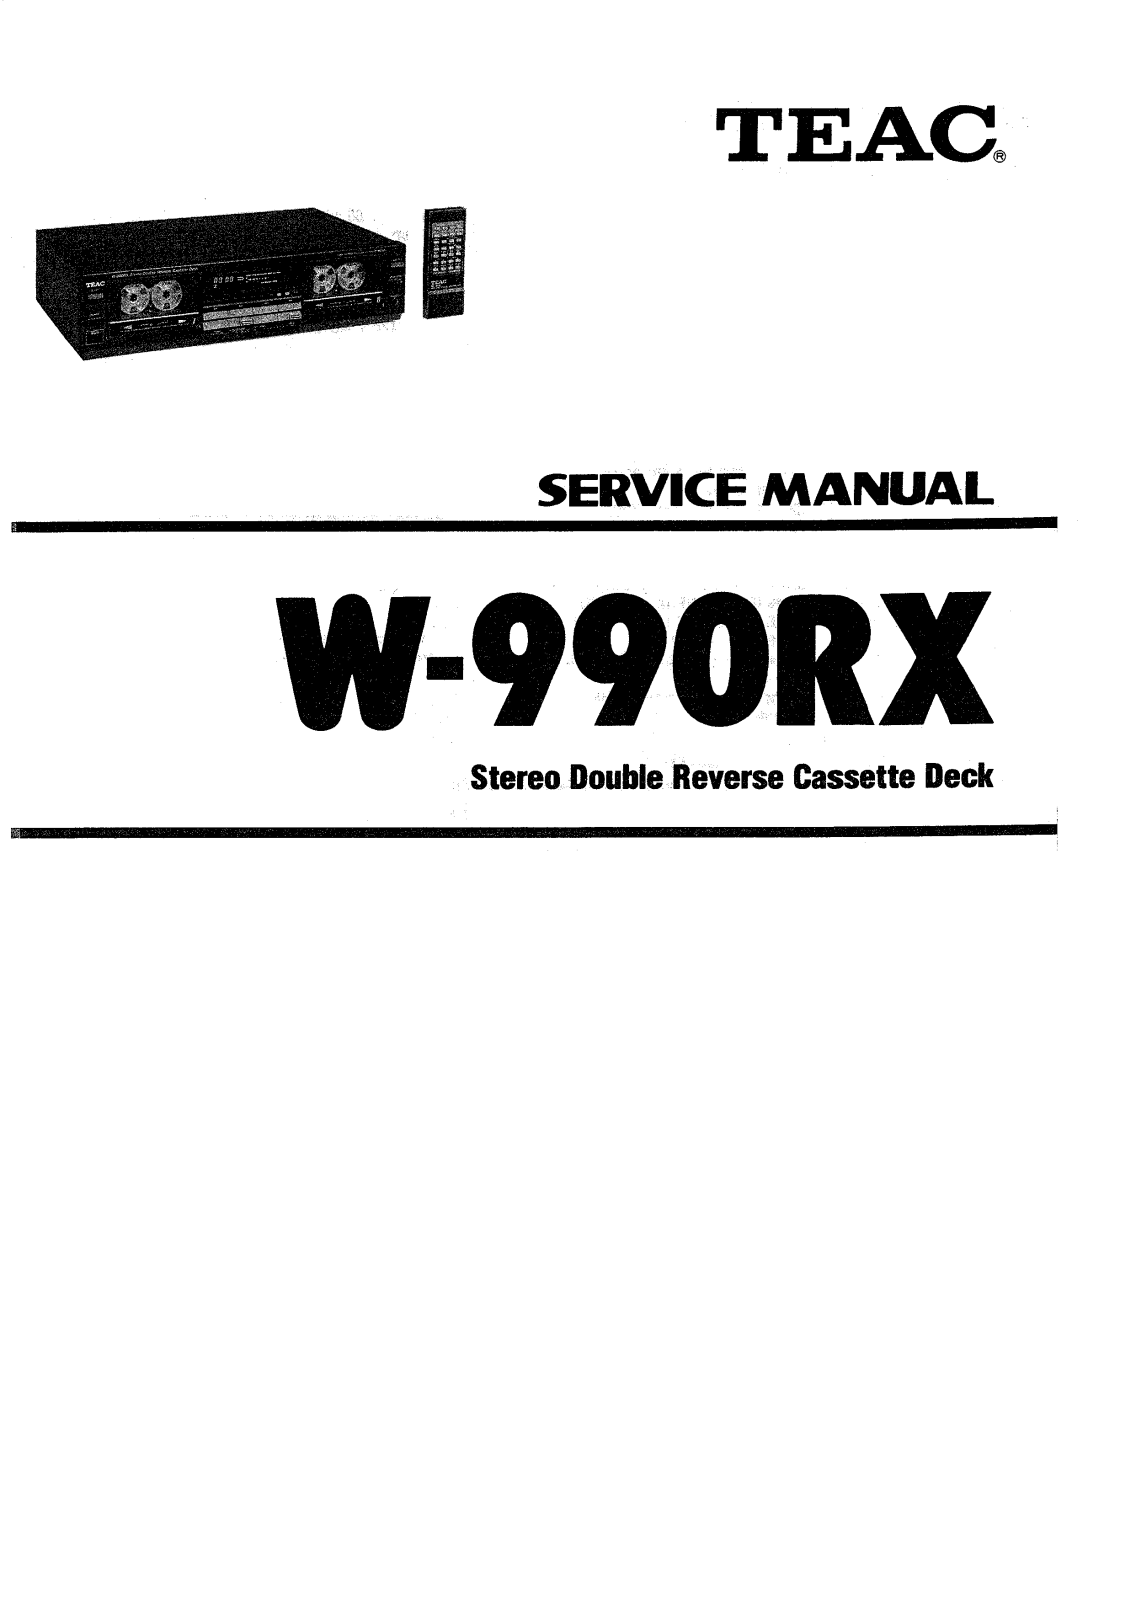 TEAC W-990-RX Service manual